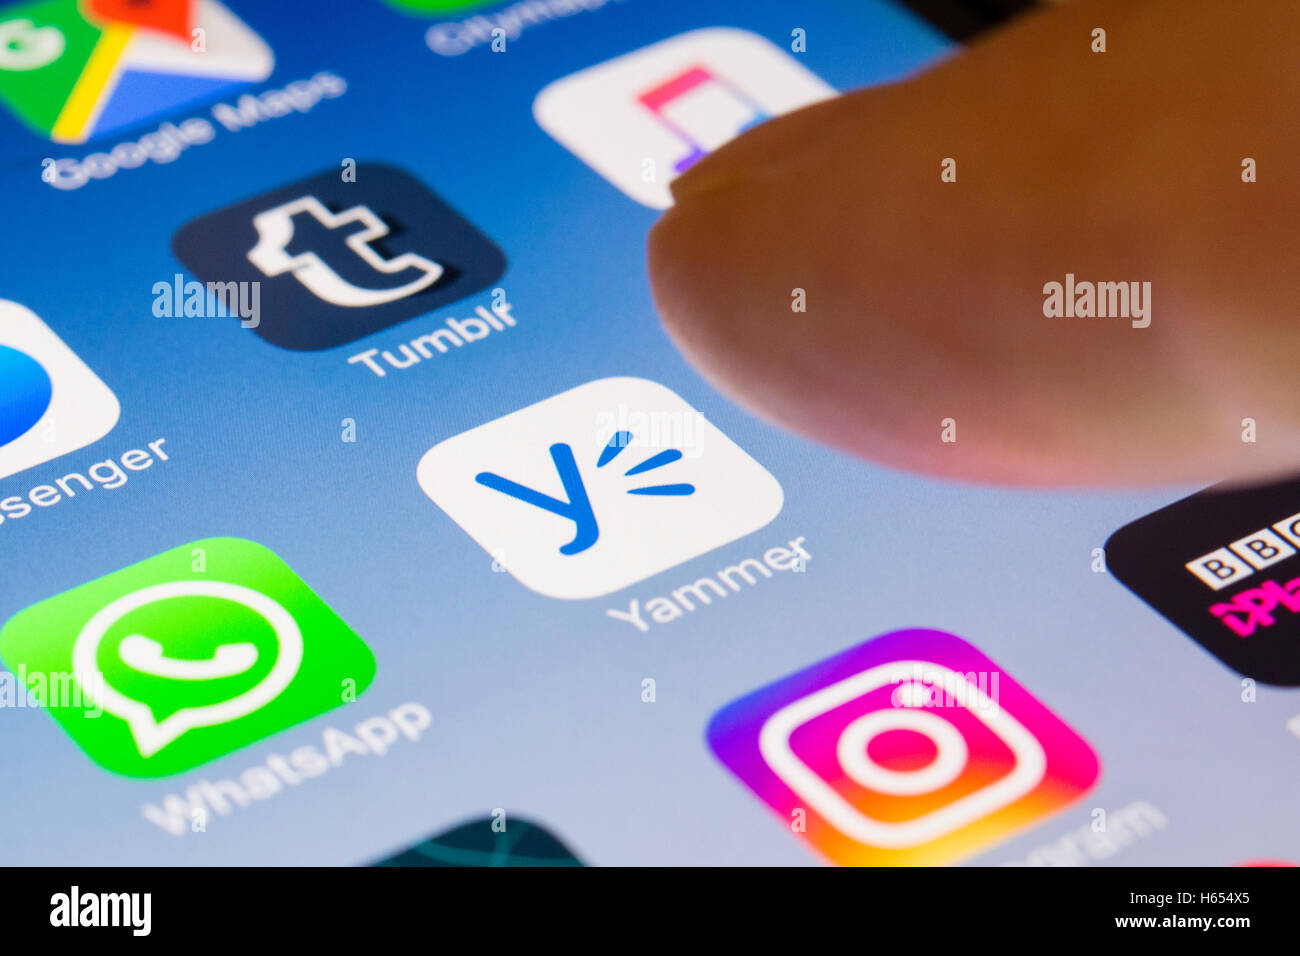 Yammer professionelle app für soziale Netzwerke hautnah auf iPhone Smartphone-Bildschirm Stockfoto